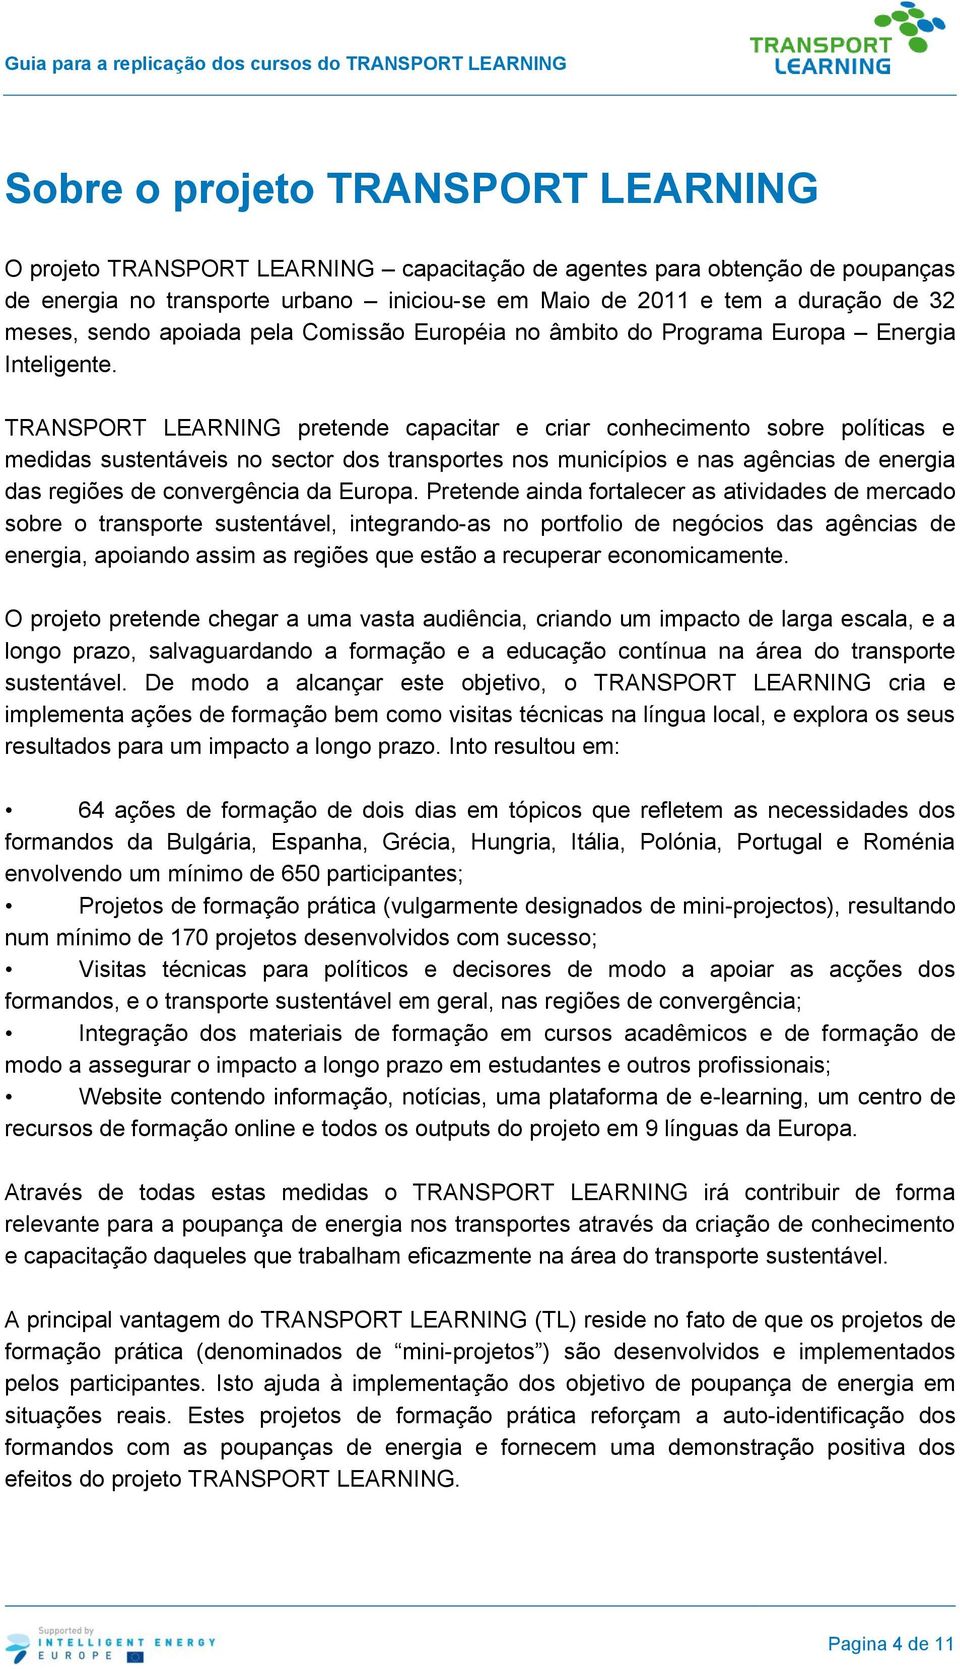 TRANSPORT LEARNING pretende capacitar e criar conhecimento sobre políticas e medidas sustentáveis no sector dos transportes nos municípios e nas agências de energia das regiões de convergência da